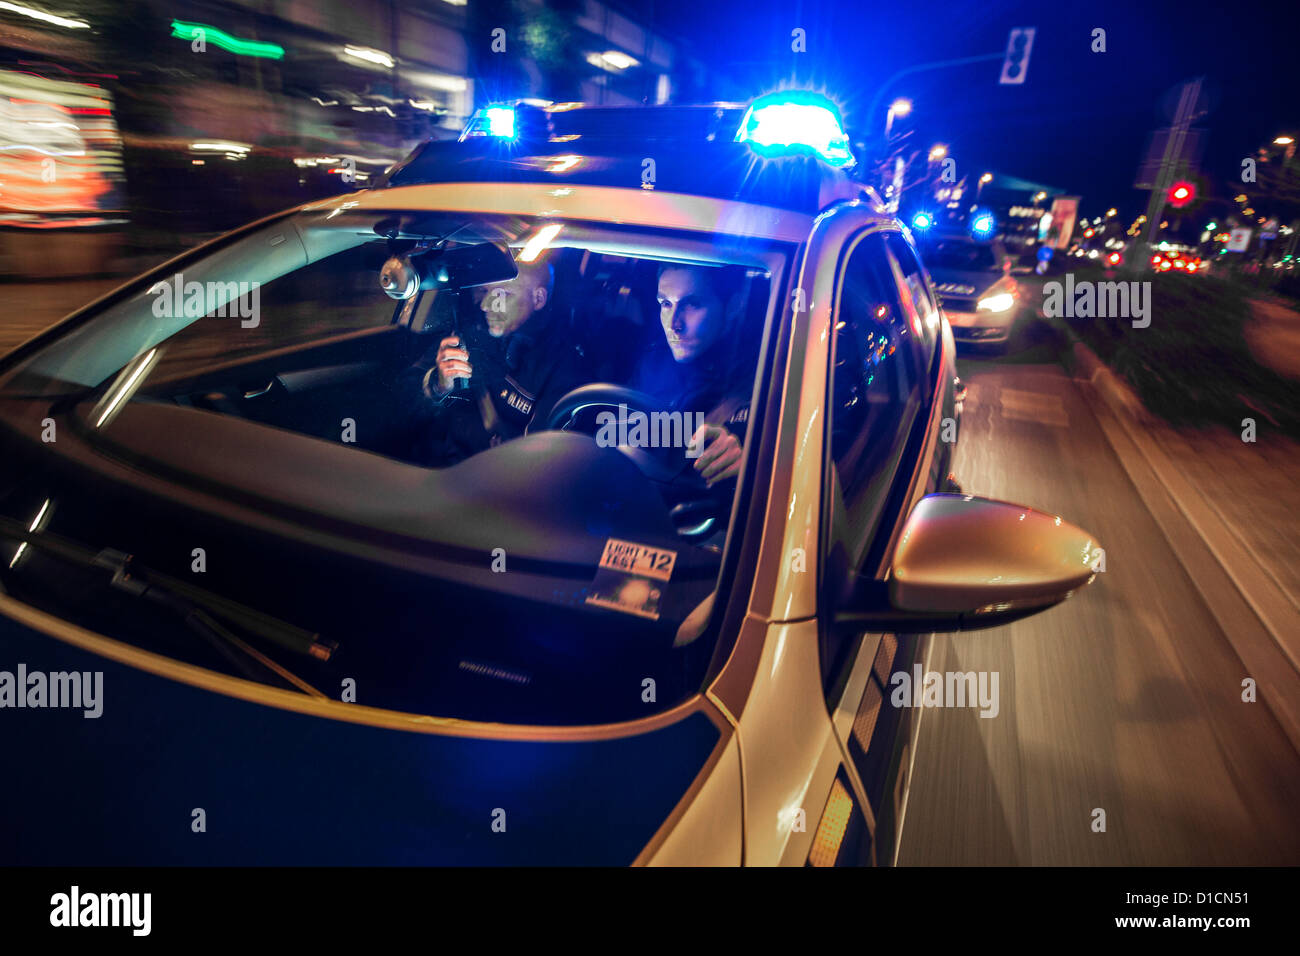 Polizei Streifenwagen mit blau blinkende Lichter, Hupe, fahren schnell während einer Notfall-Mission. Stockfoto